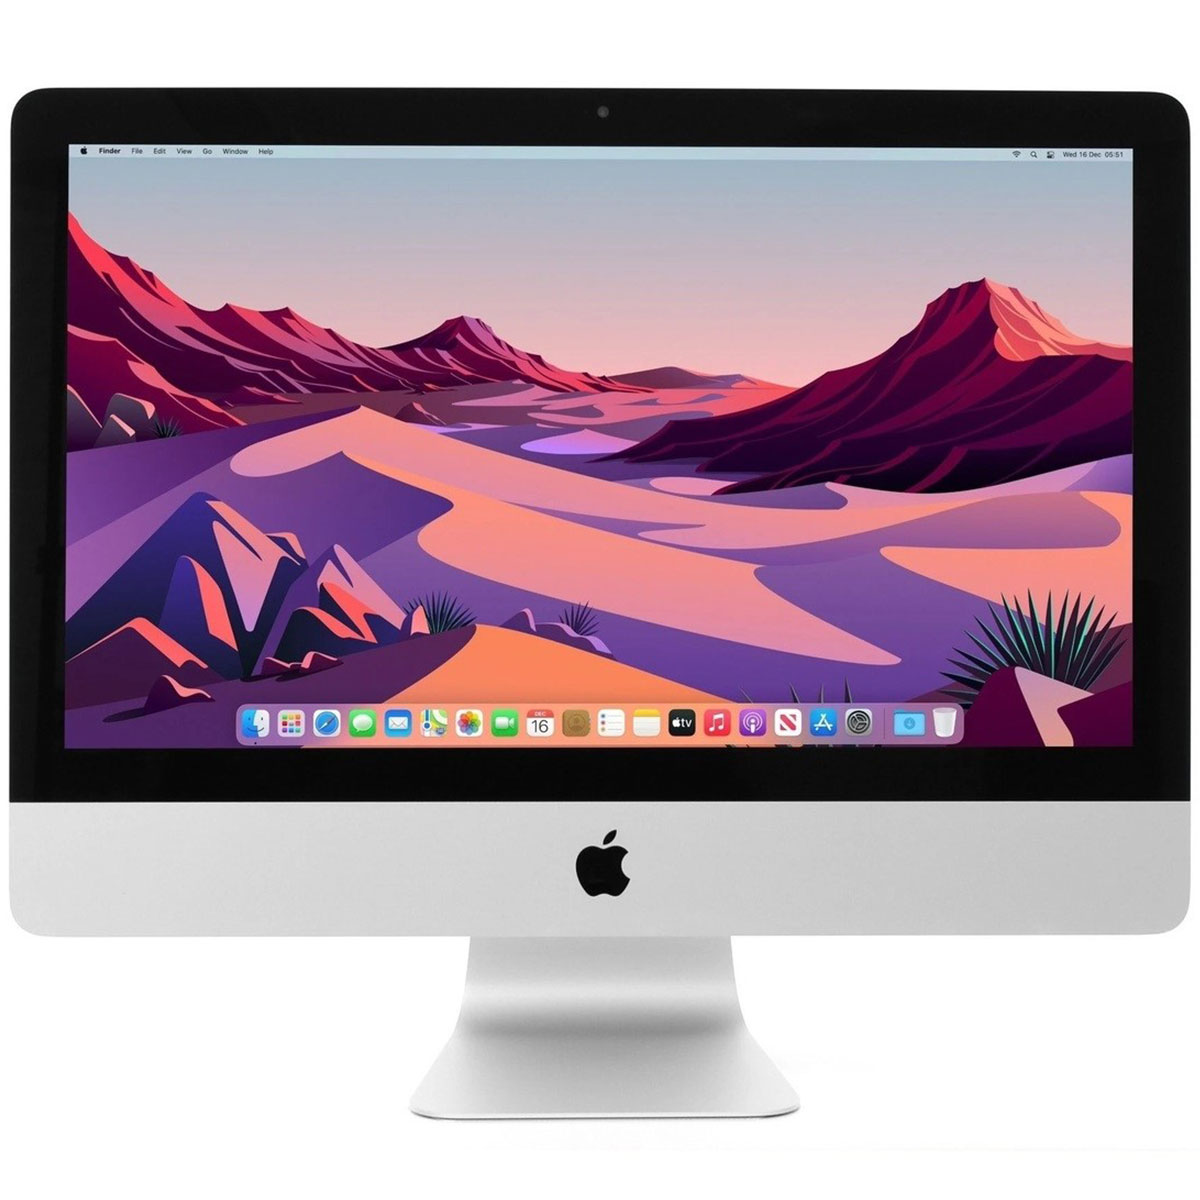 Imac iMac Apple アイマック アップル - デスクトップ型PC